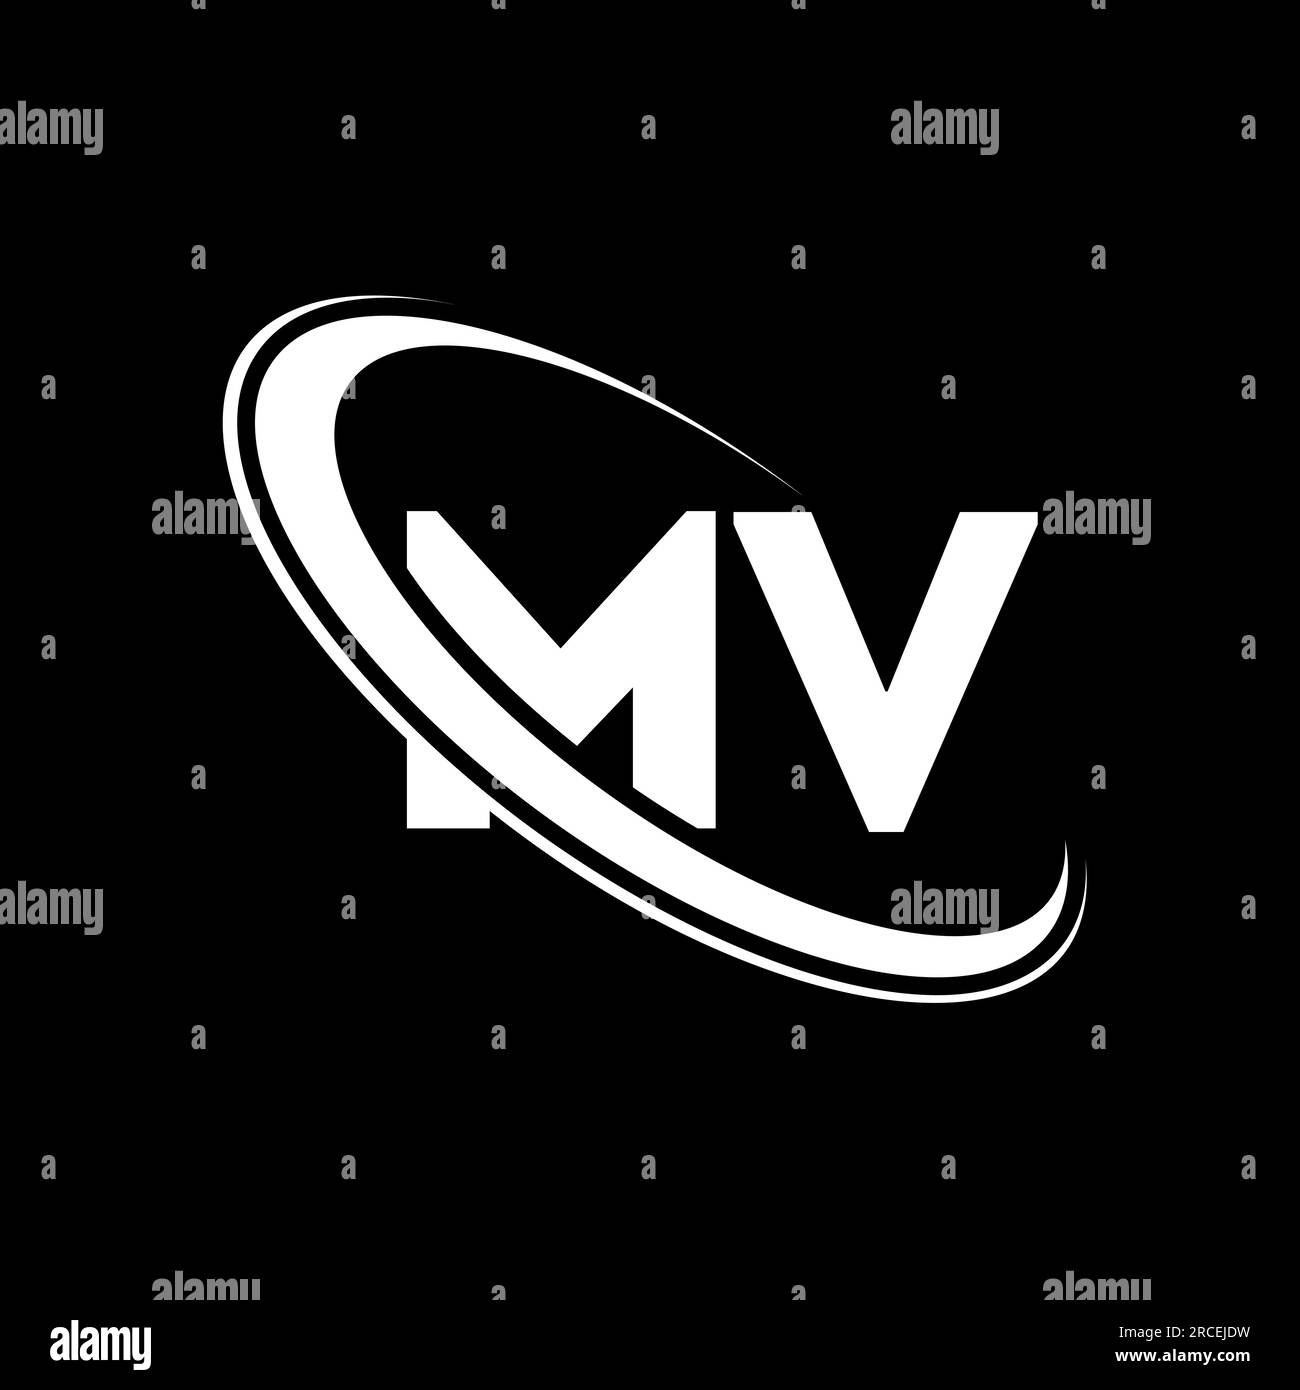 MV logo. M V design. White MV letter. MV/M V letter logo design. Initial letter MV linked circle uppercase monogram logo. Stock Vector